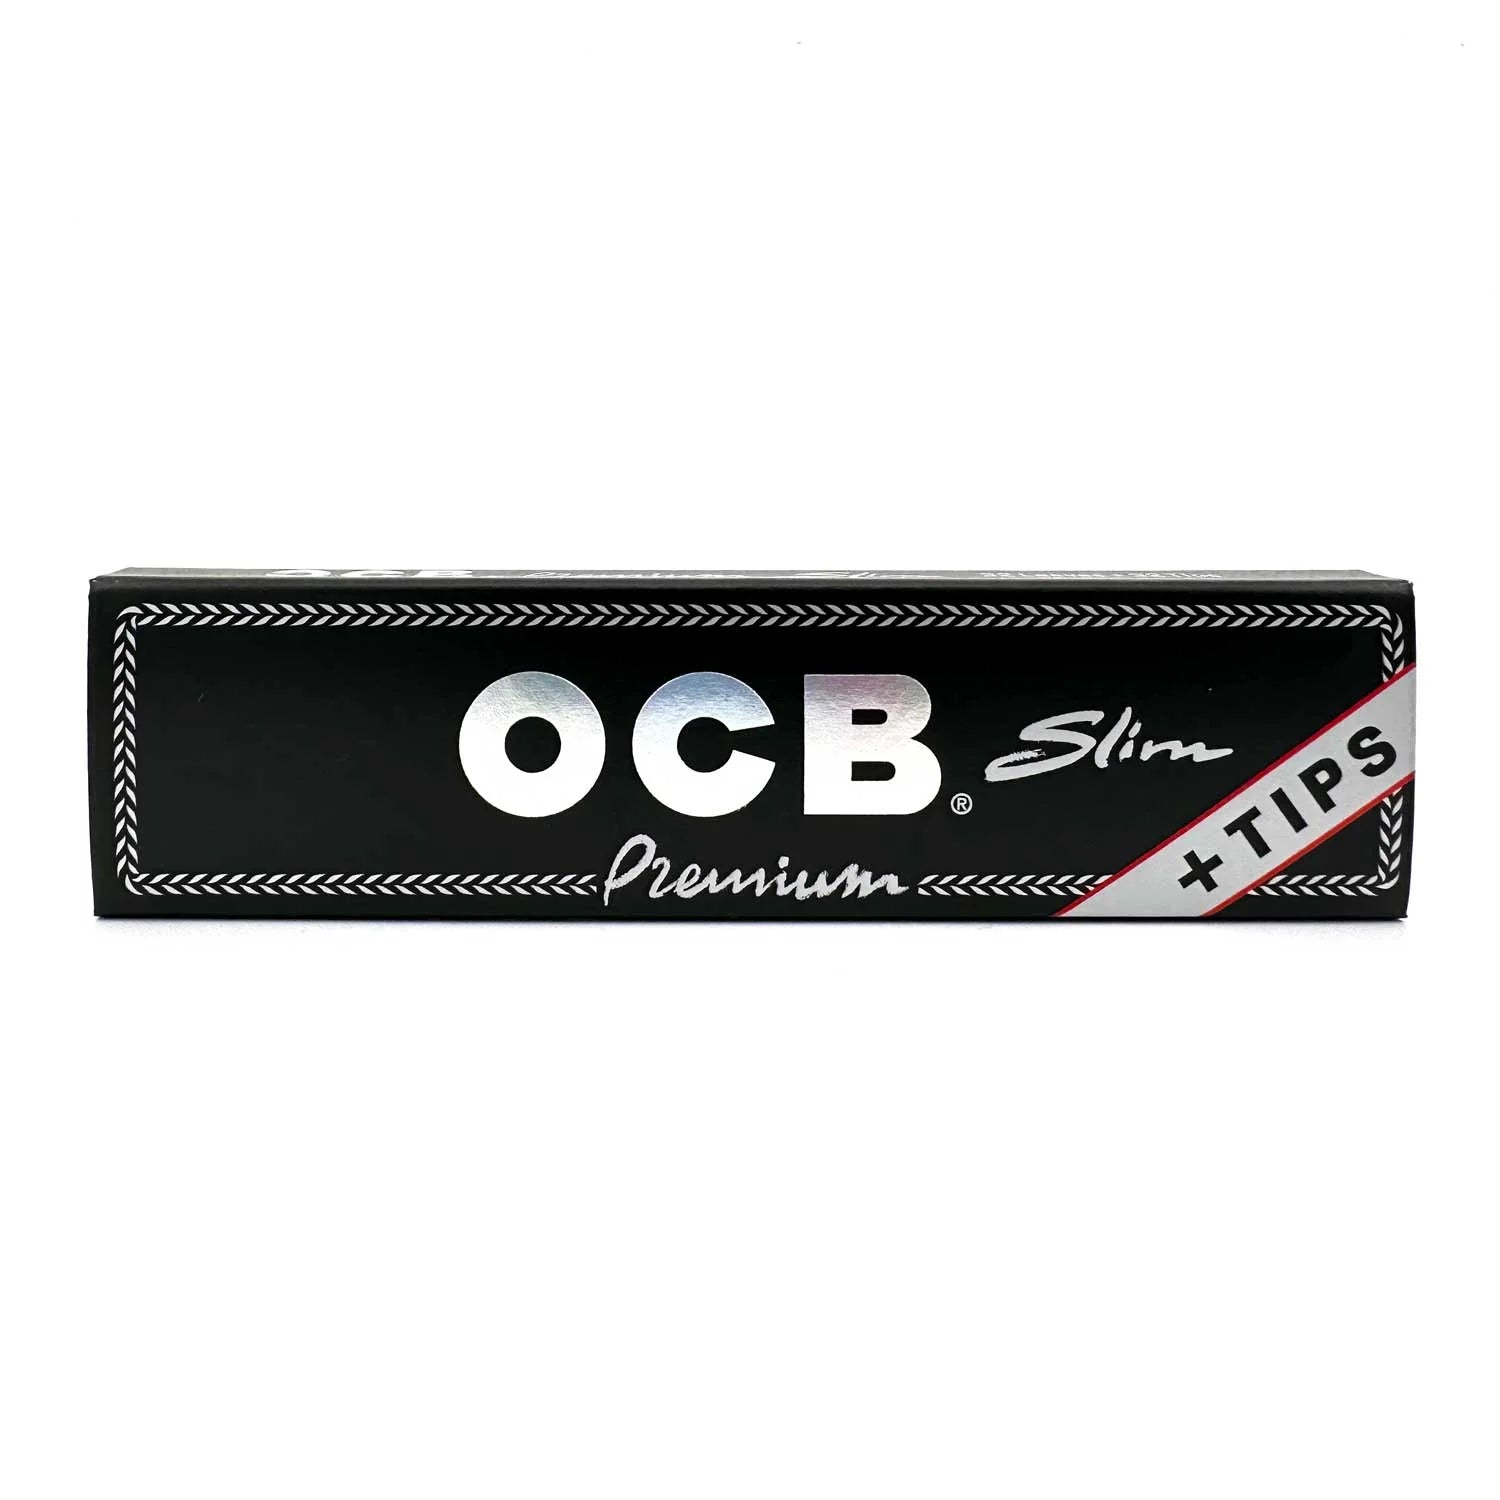 OCB Premium Slim with Tips